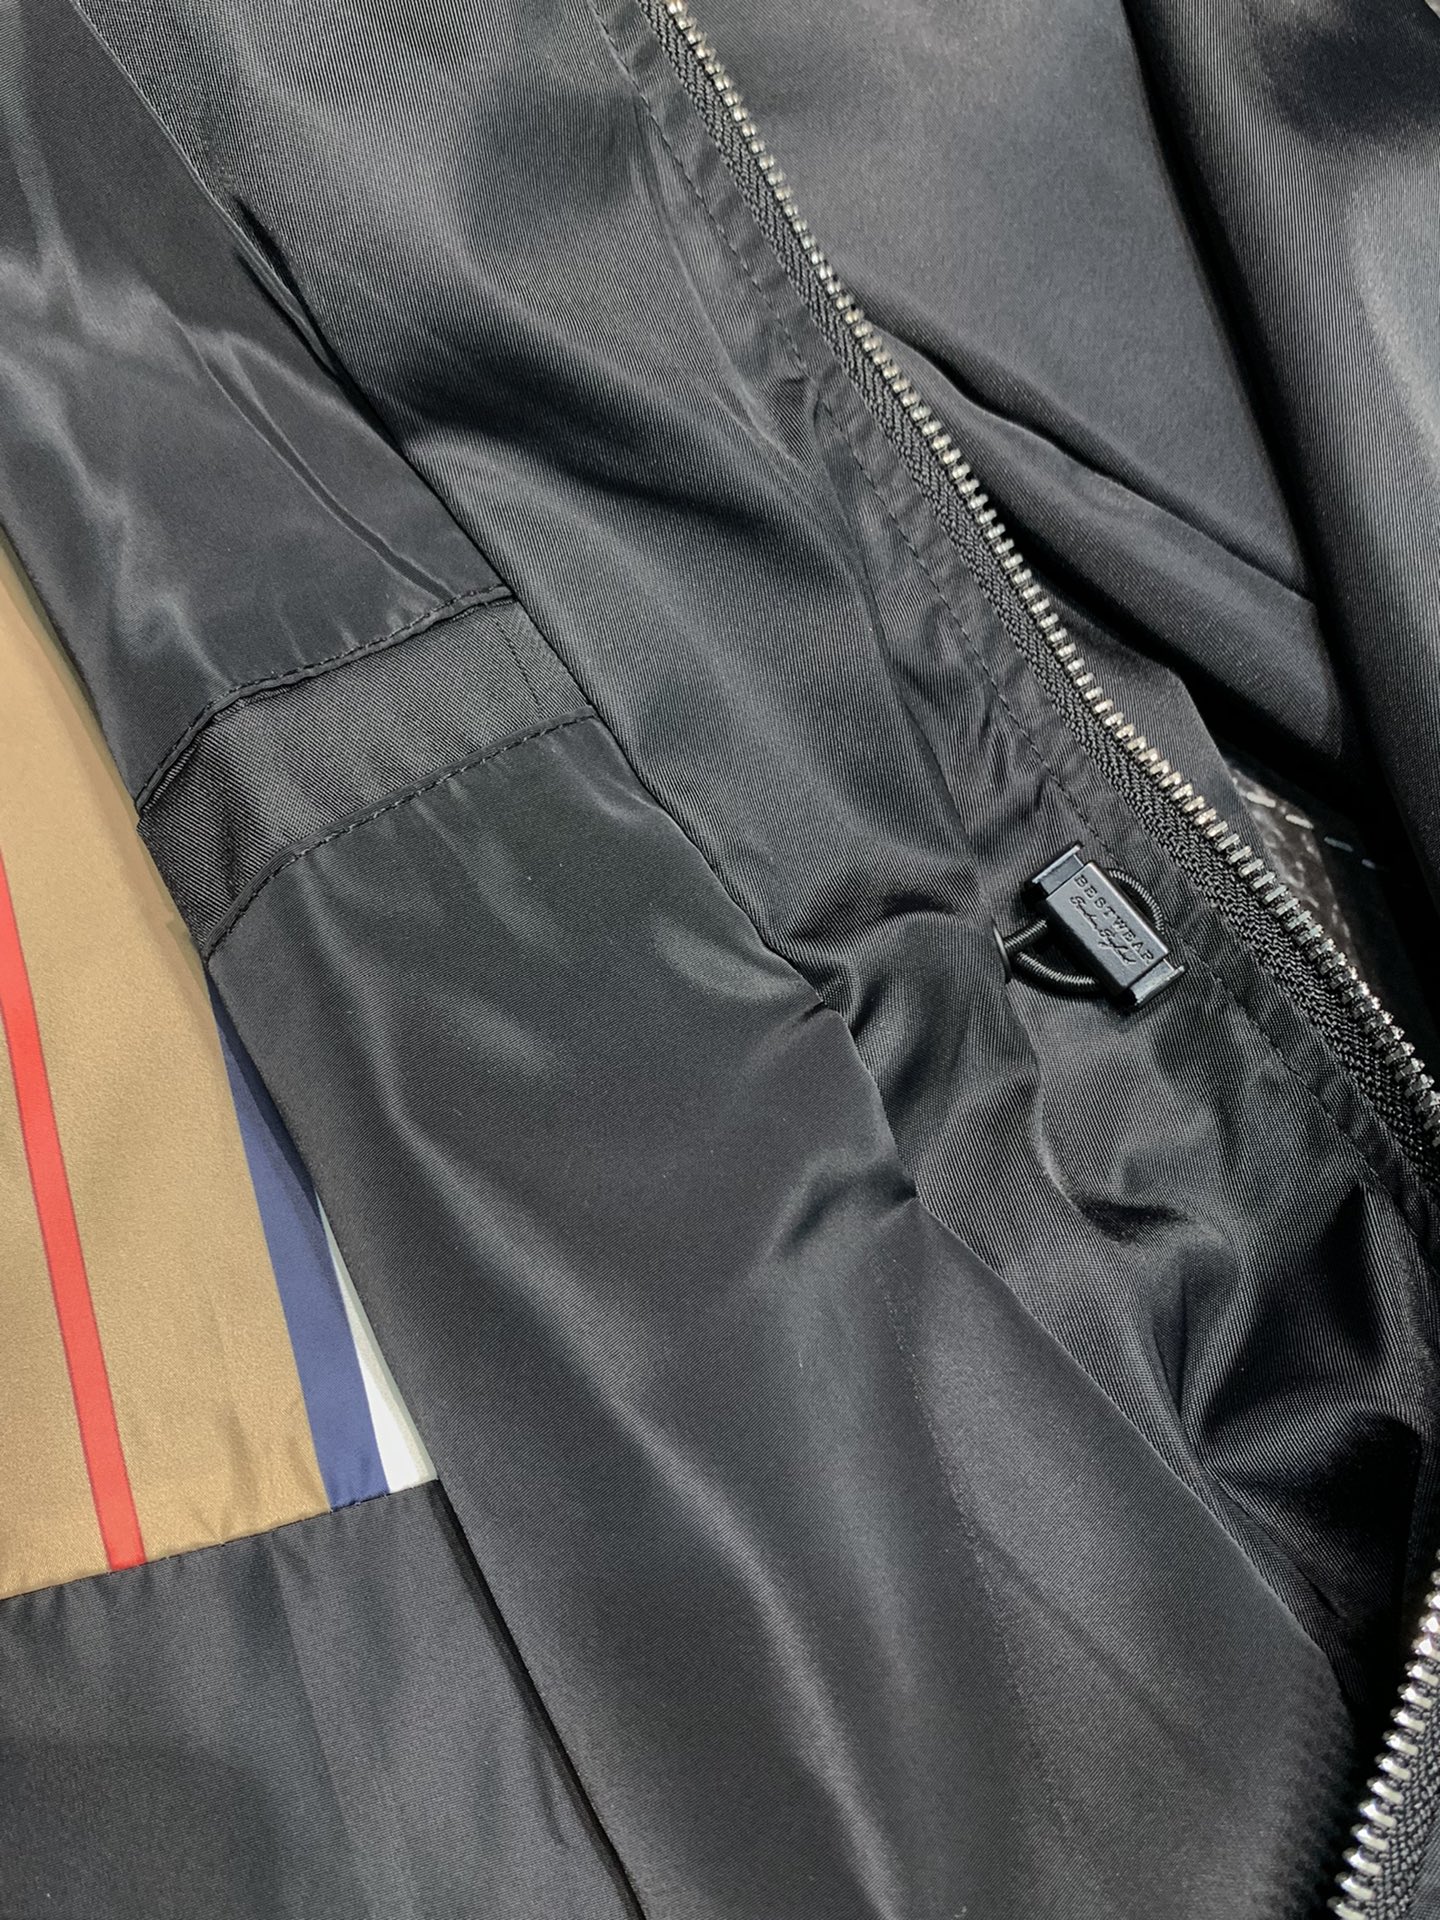 BBR巴宝莉独家专供最新春秋时尚立领夹克经典设计感与颜值爆棚的外套品质更是无法挑剔品控可以直接入手不容过